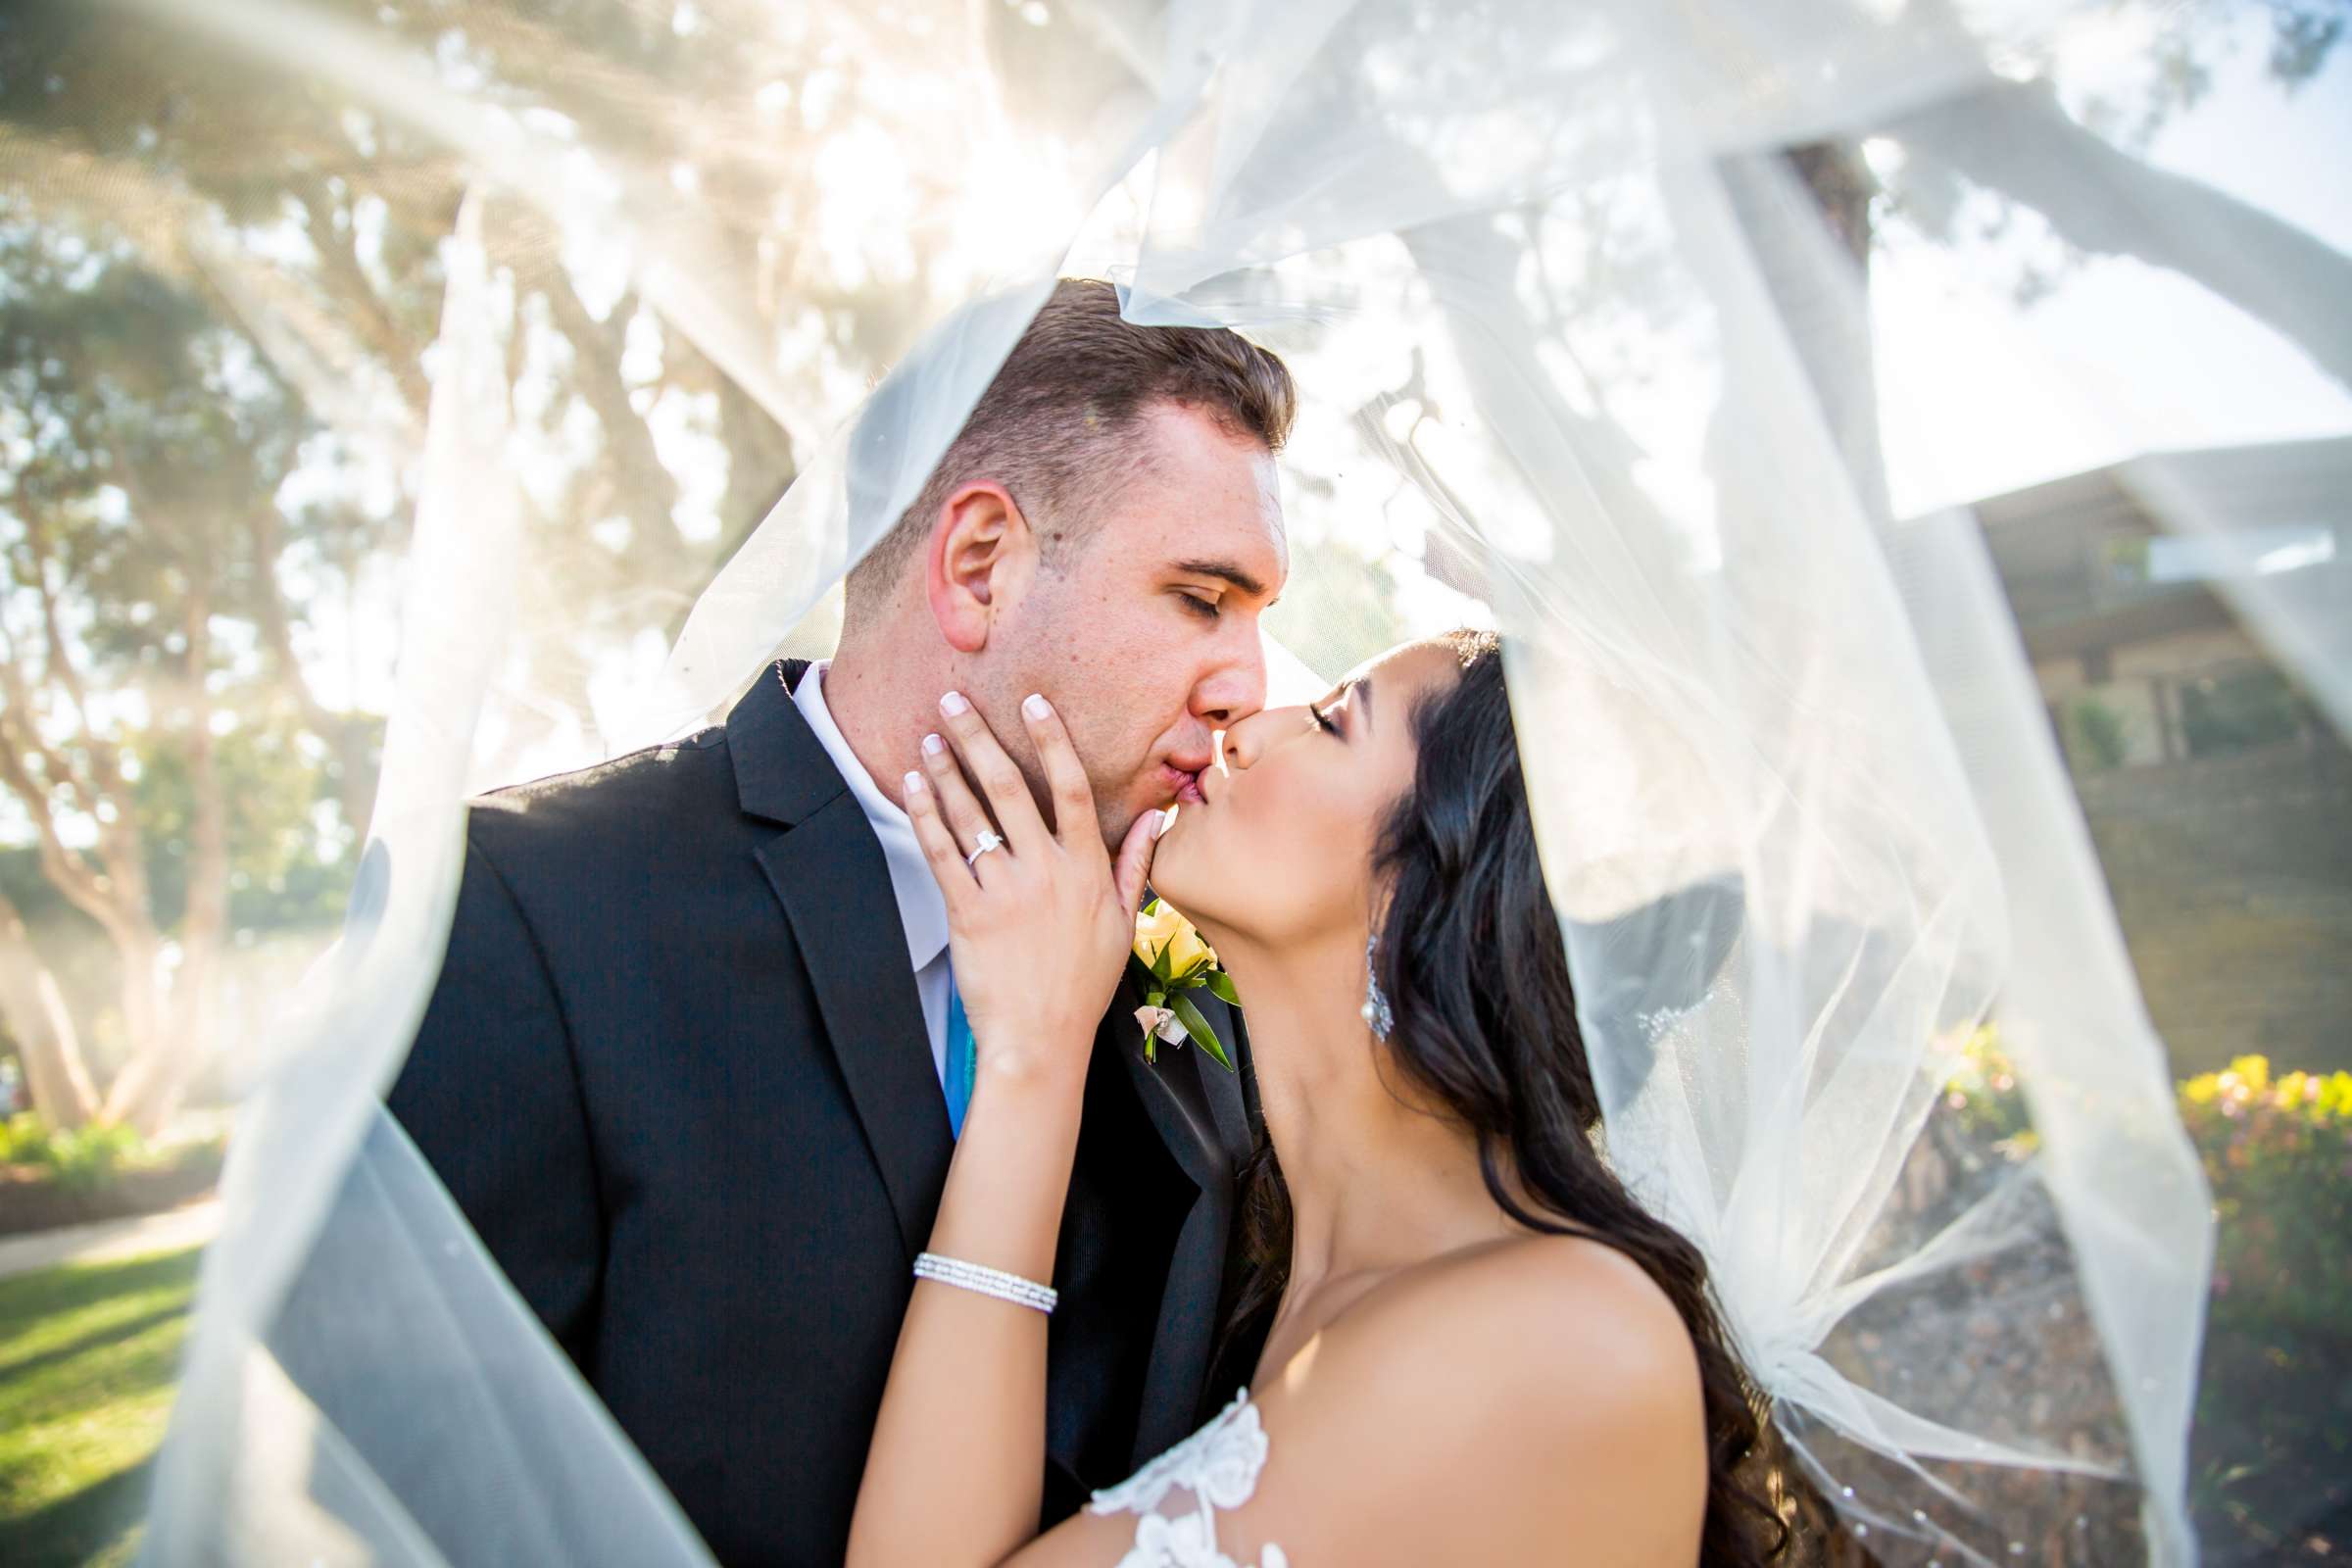 Hotel Del Coronado Wedding, Sarah and Kyle Wedding Photo #1 by True Photography